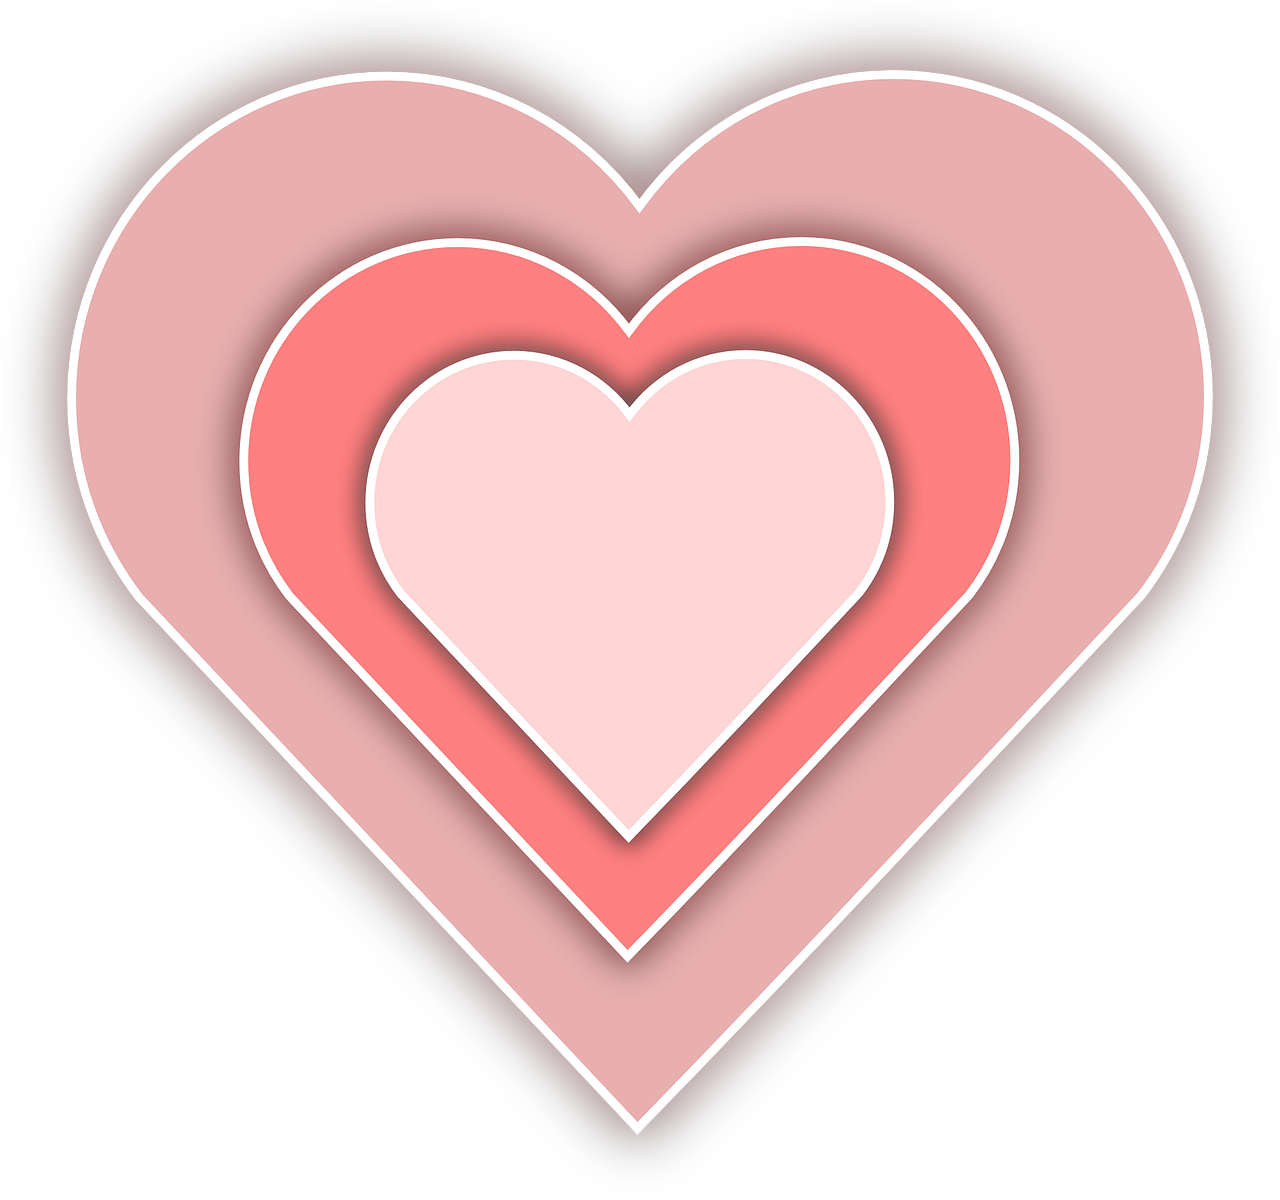  Valentinstag Hintergrundbild 1280x1200. Herz Liebe Rosa Vektorgrafik auf Pixabay